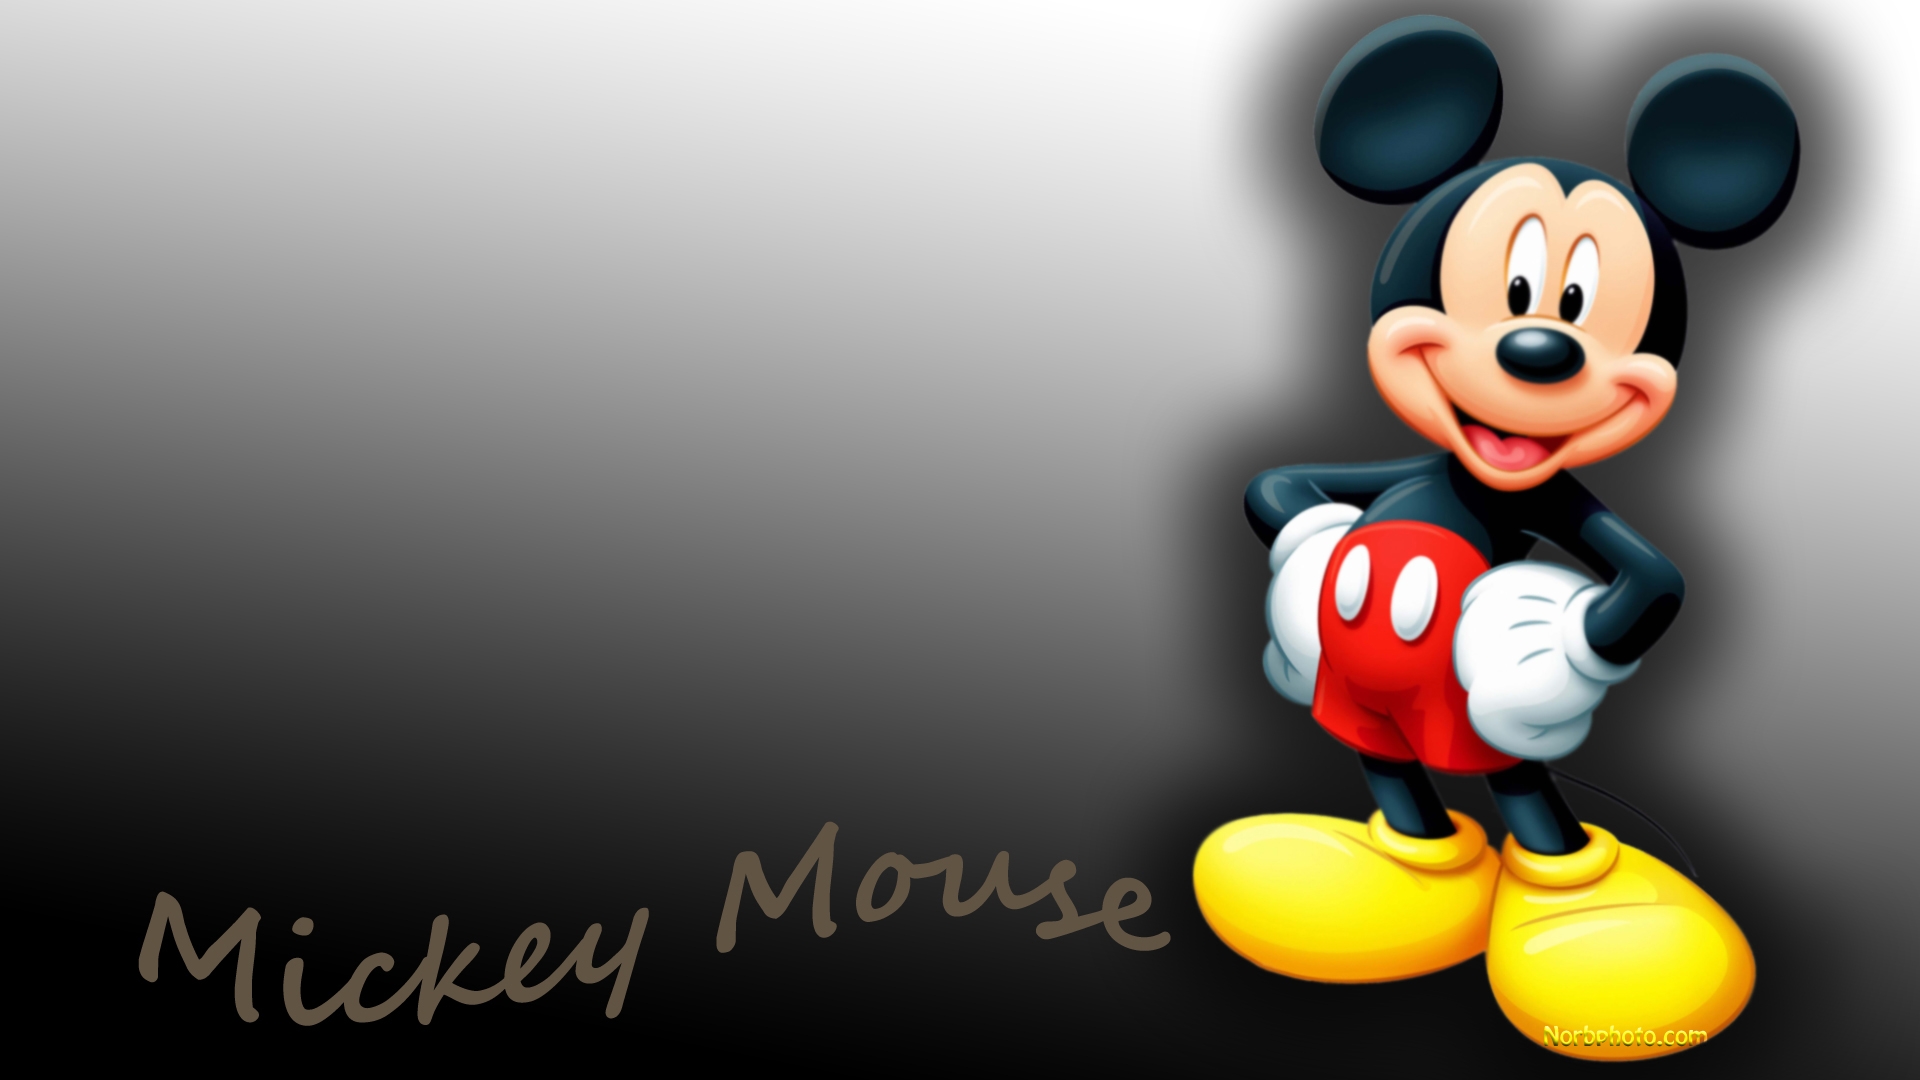 미키 마우스 배경 화면 다운로드,만화 영화,만화,생기,소설 속의 인물,장난감